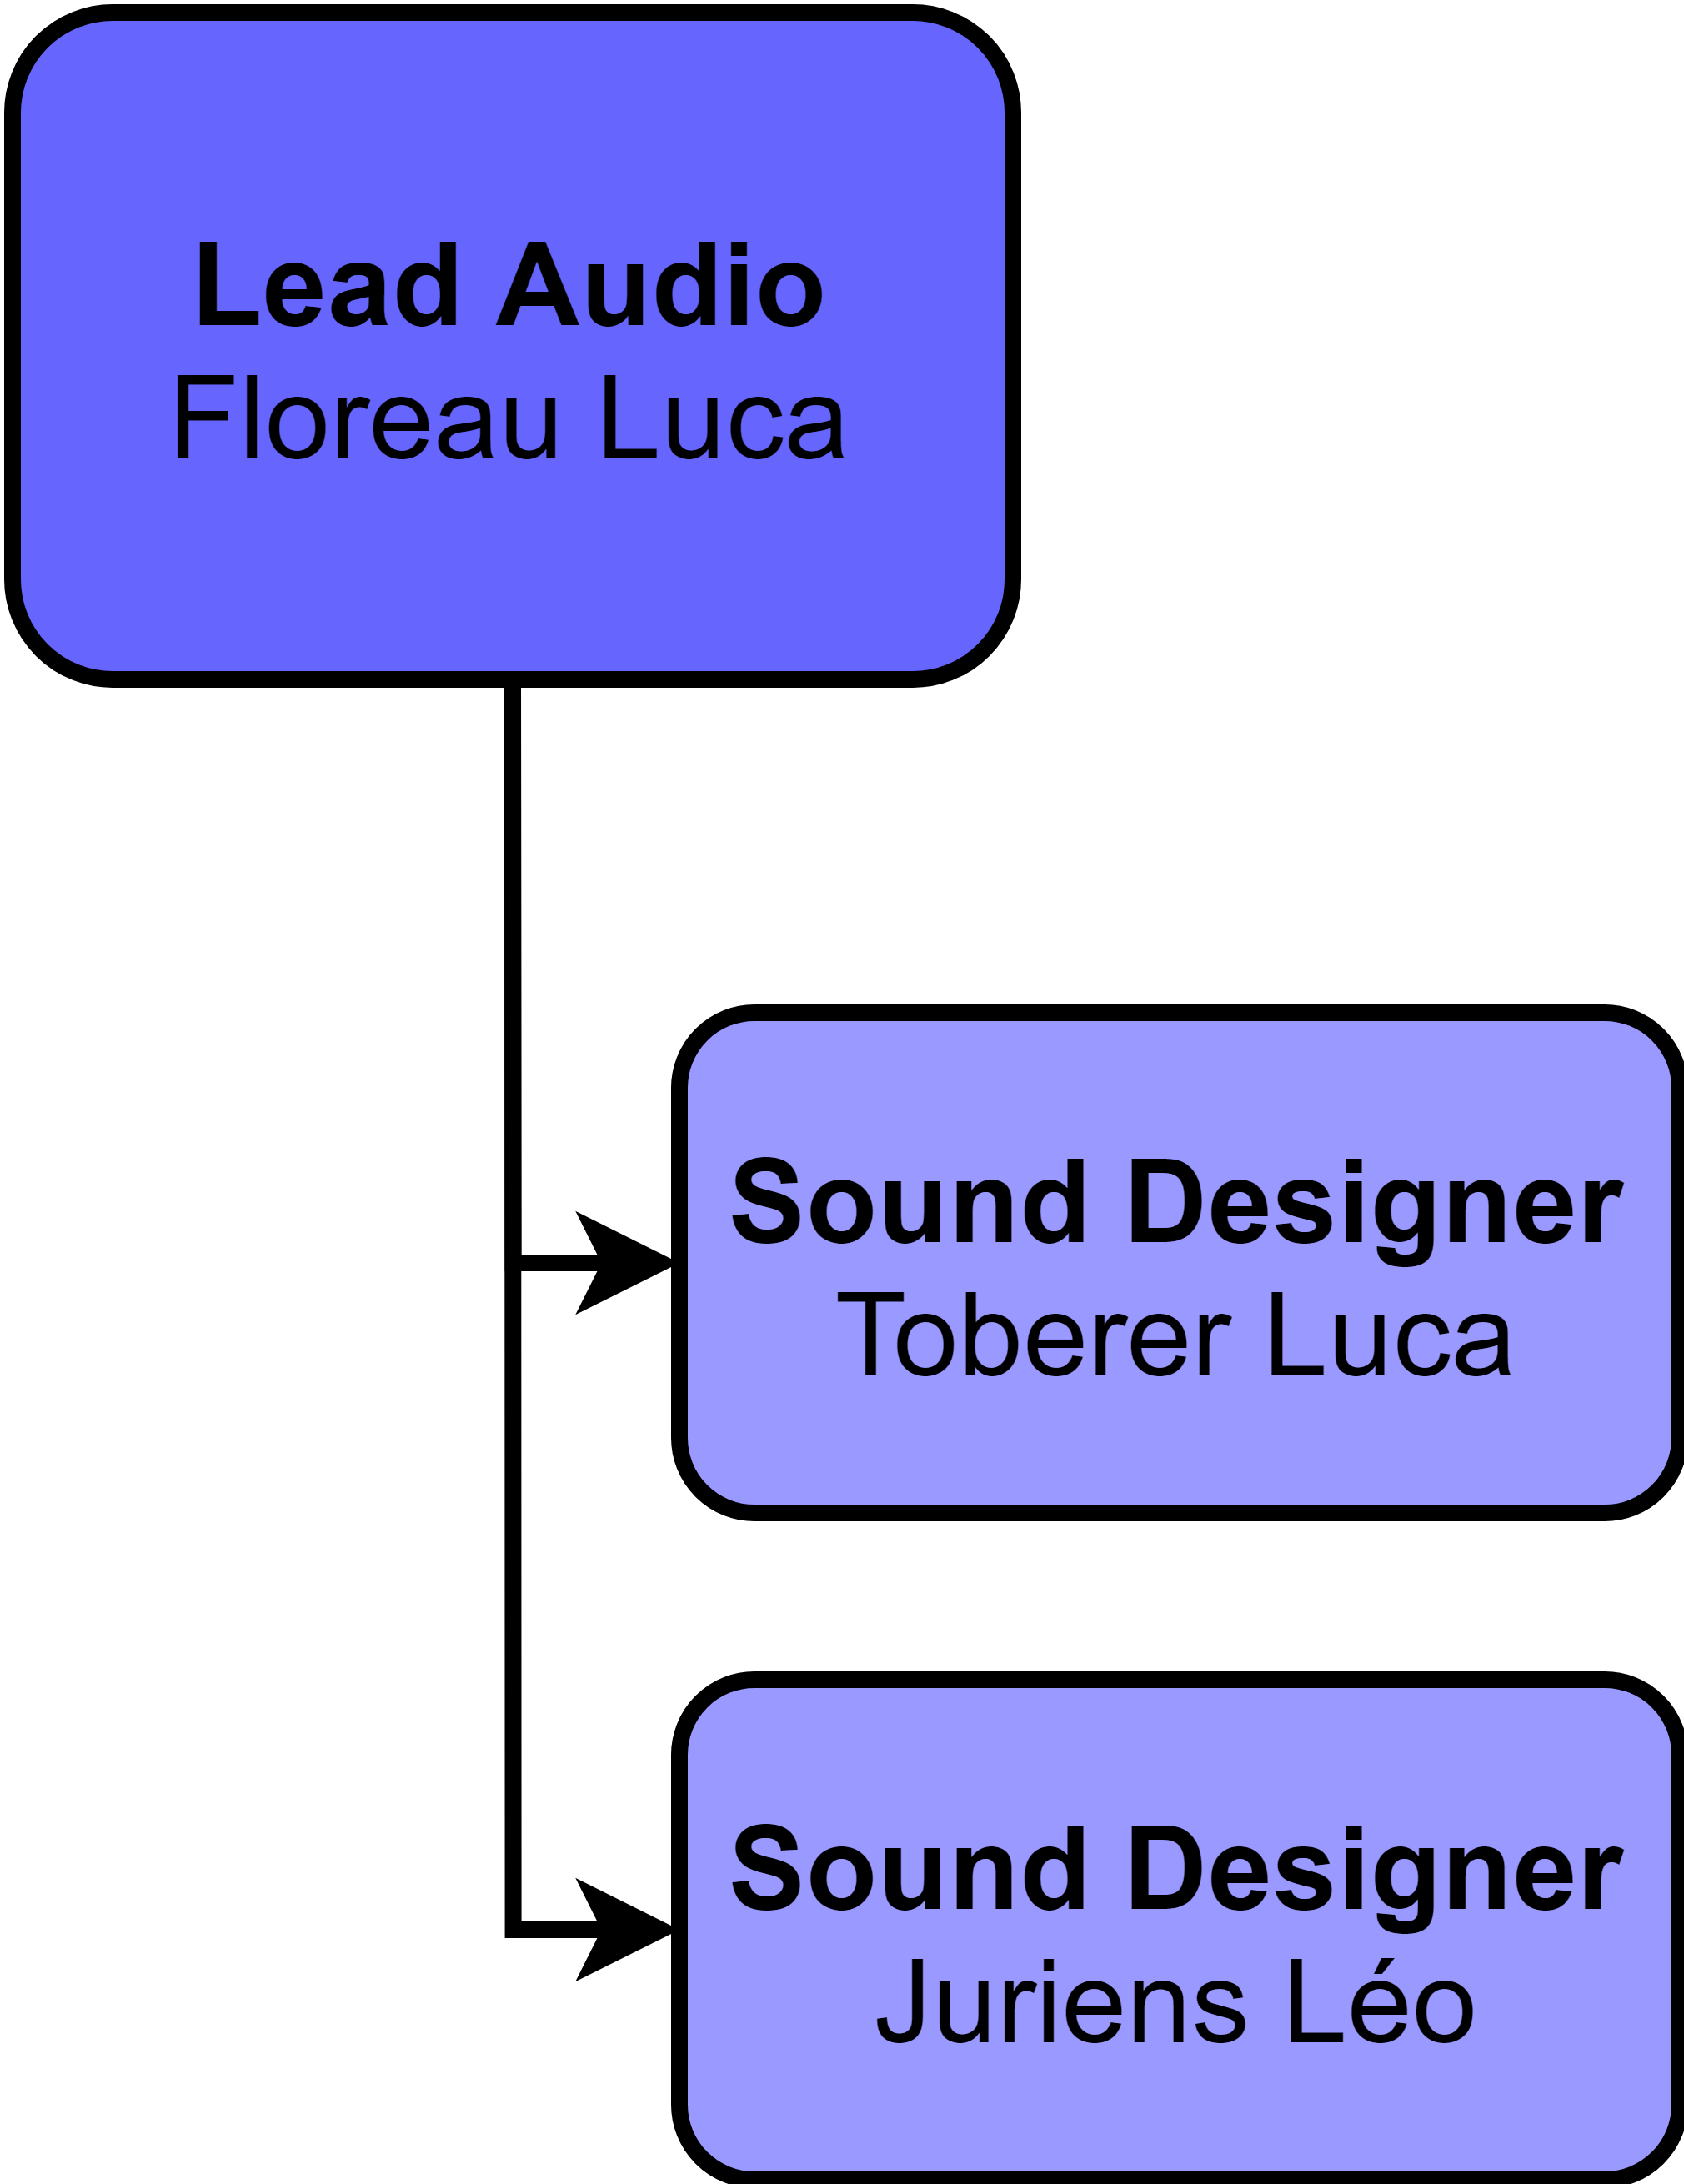 Audio Hierarchy